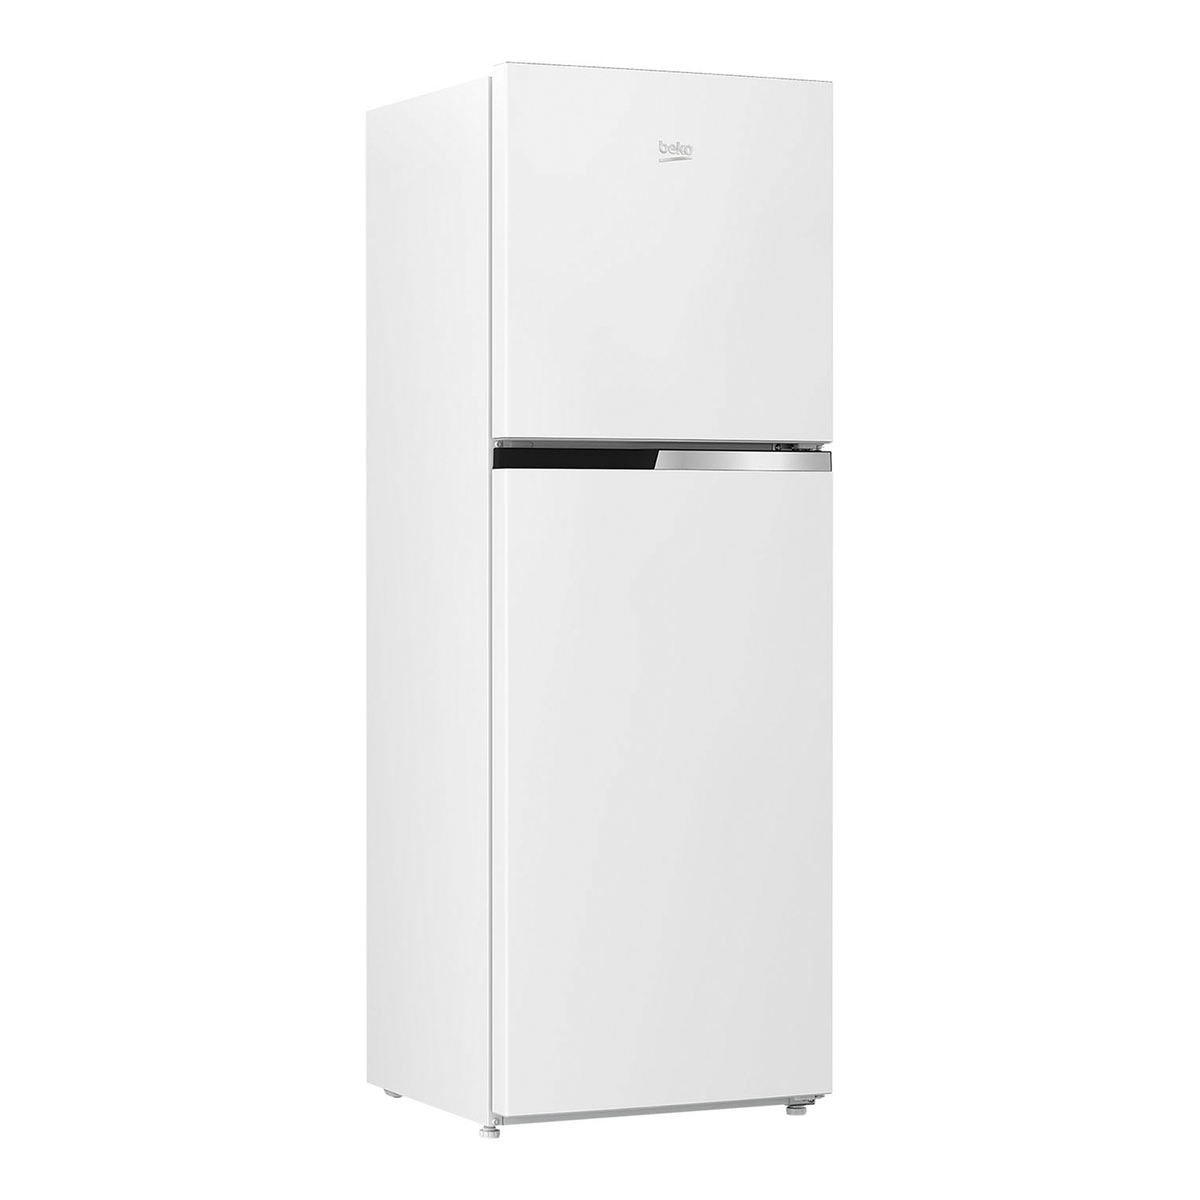 Beko Double Door Refrigerator RDNT300W 300L